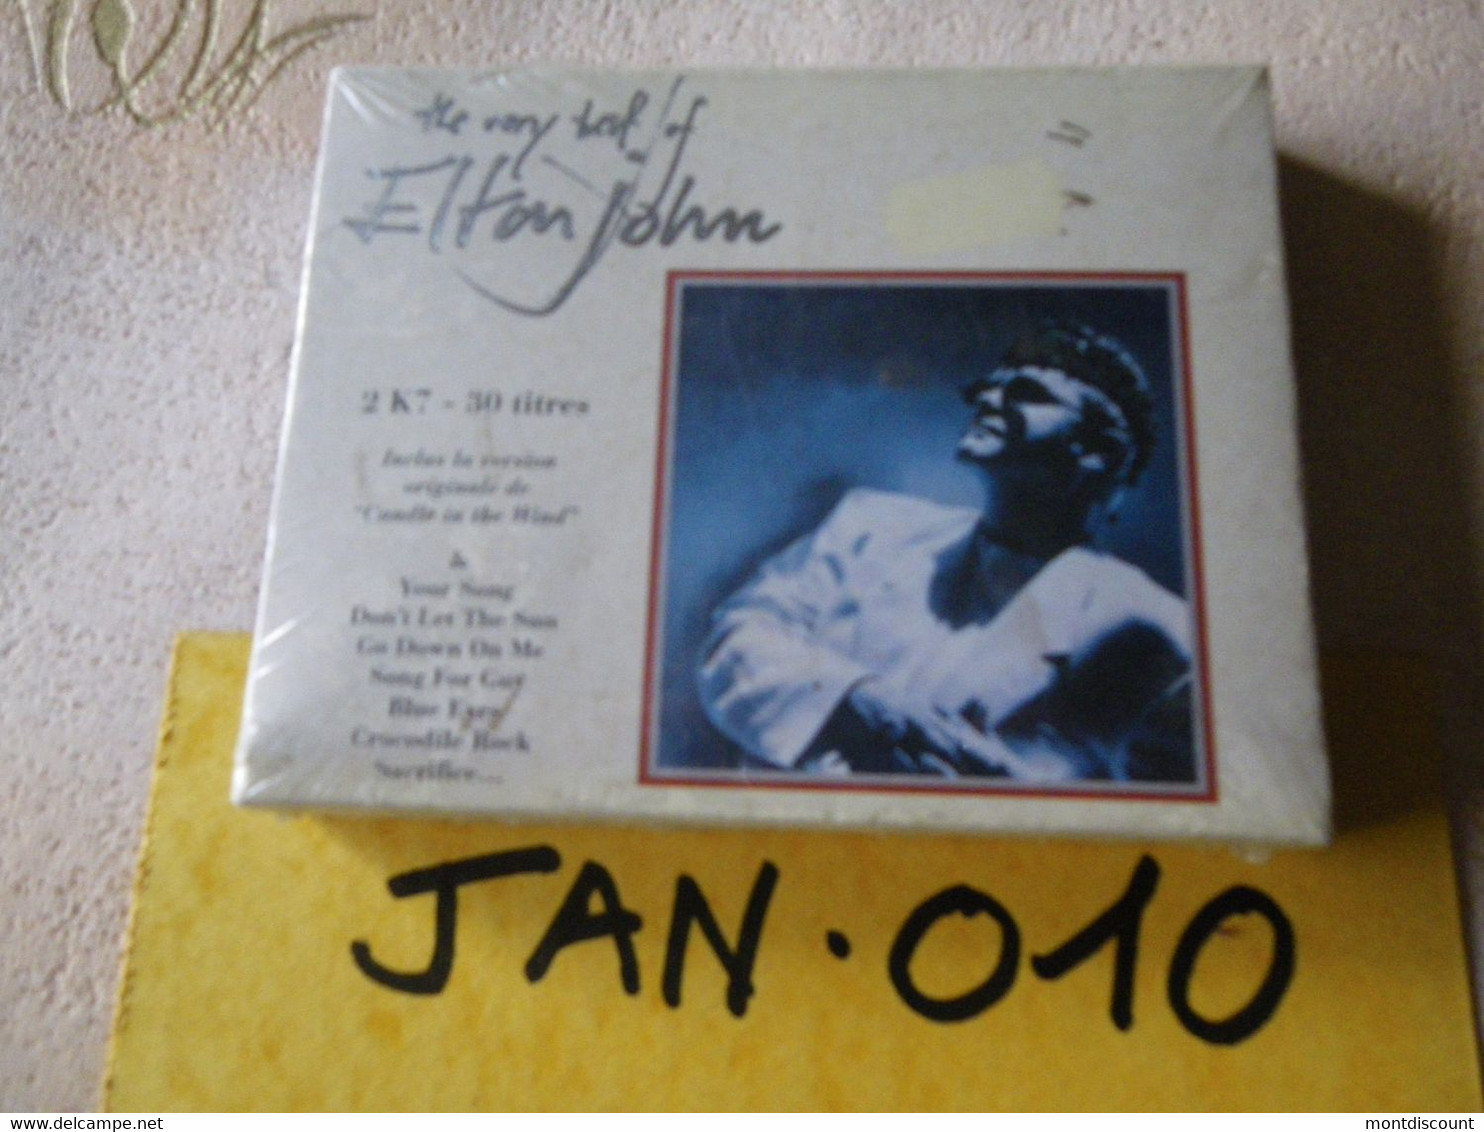 ELTON JOHN K7 AUDIO EMBALLE D'ORIGINE JAMAIS SERVIE... VOIR PHOTO... (JAN 010) - Cassettes Audio